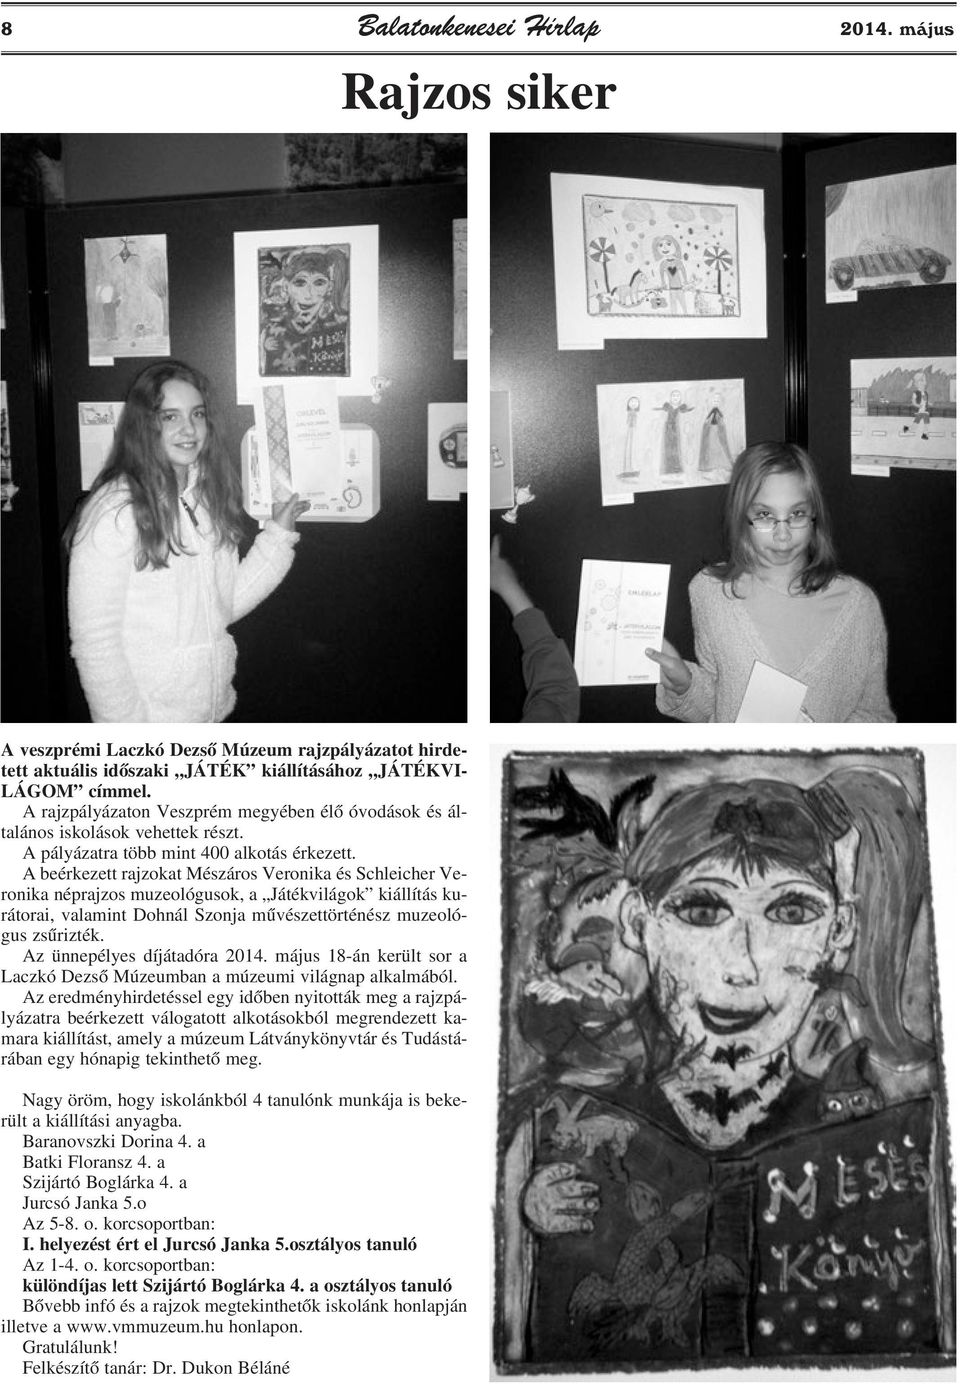 A beérkezett rajzokat Mészáros Veronika és Schleicher Veronika néprajzos muzeológusok, a Játékvilágok kiállítás kurátorai, valamint Dohnál Szonja mûvészettörténész muzeológus zsûrizték.